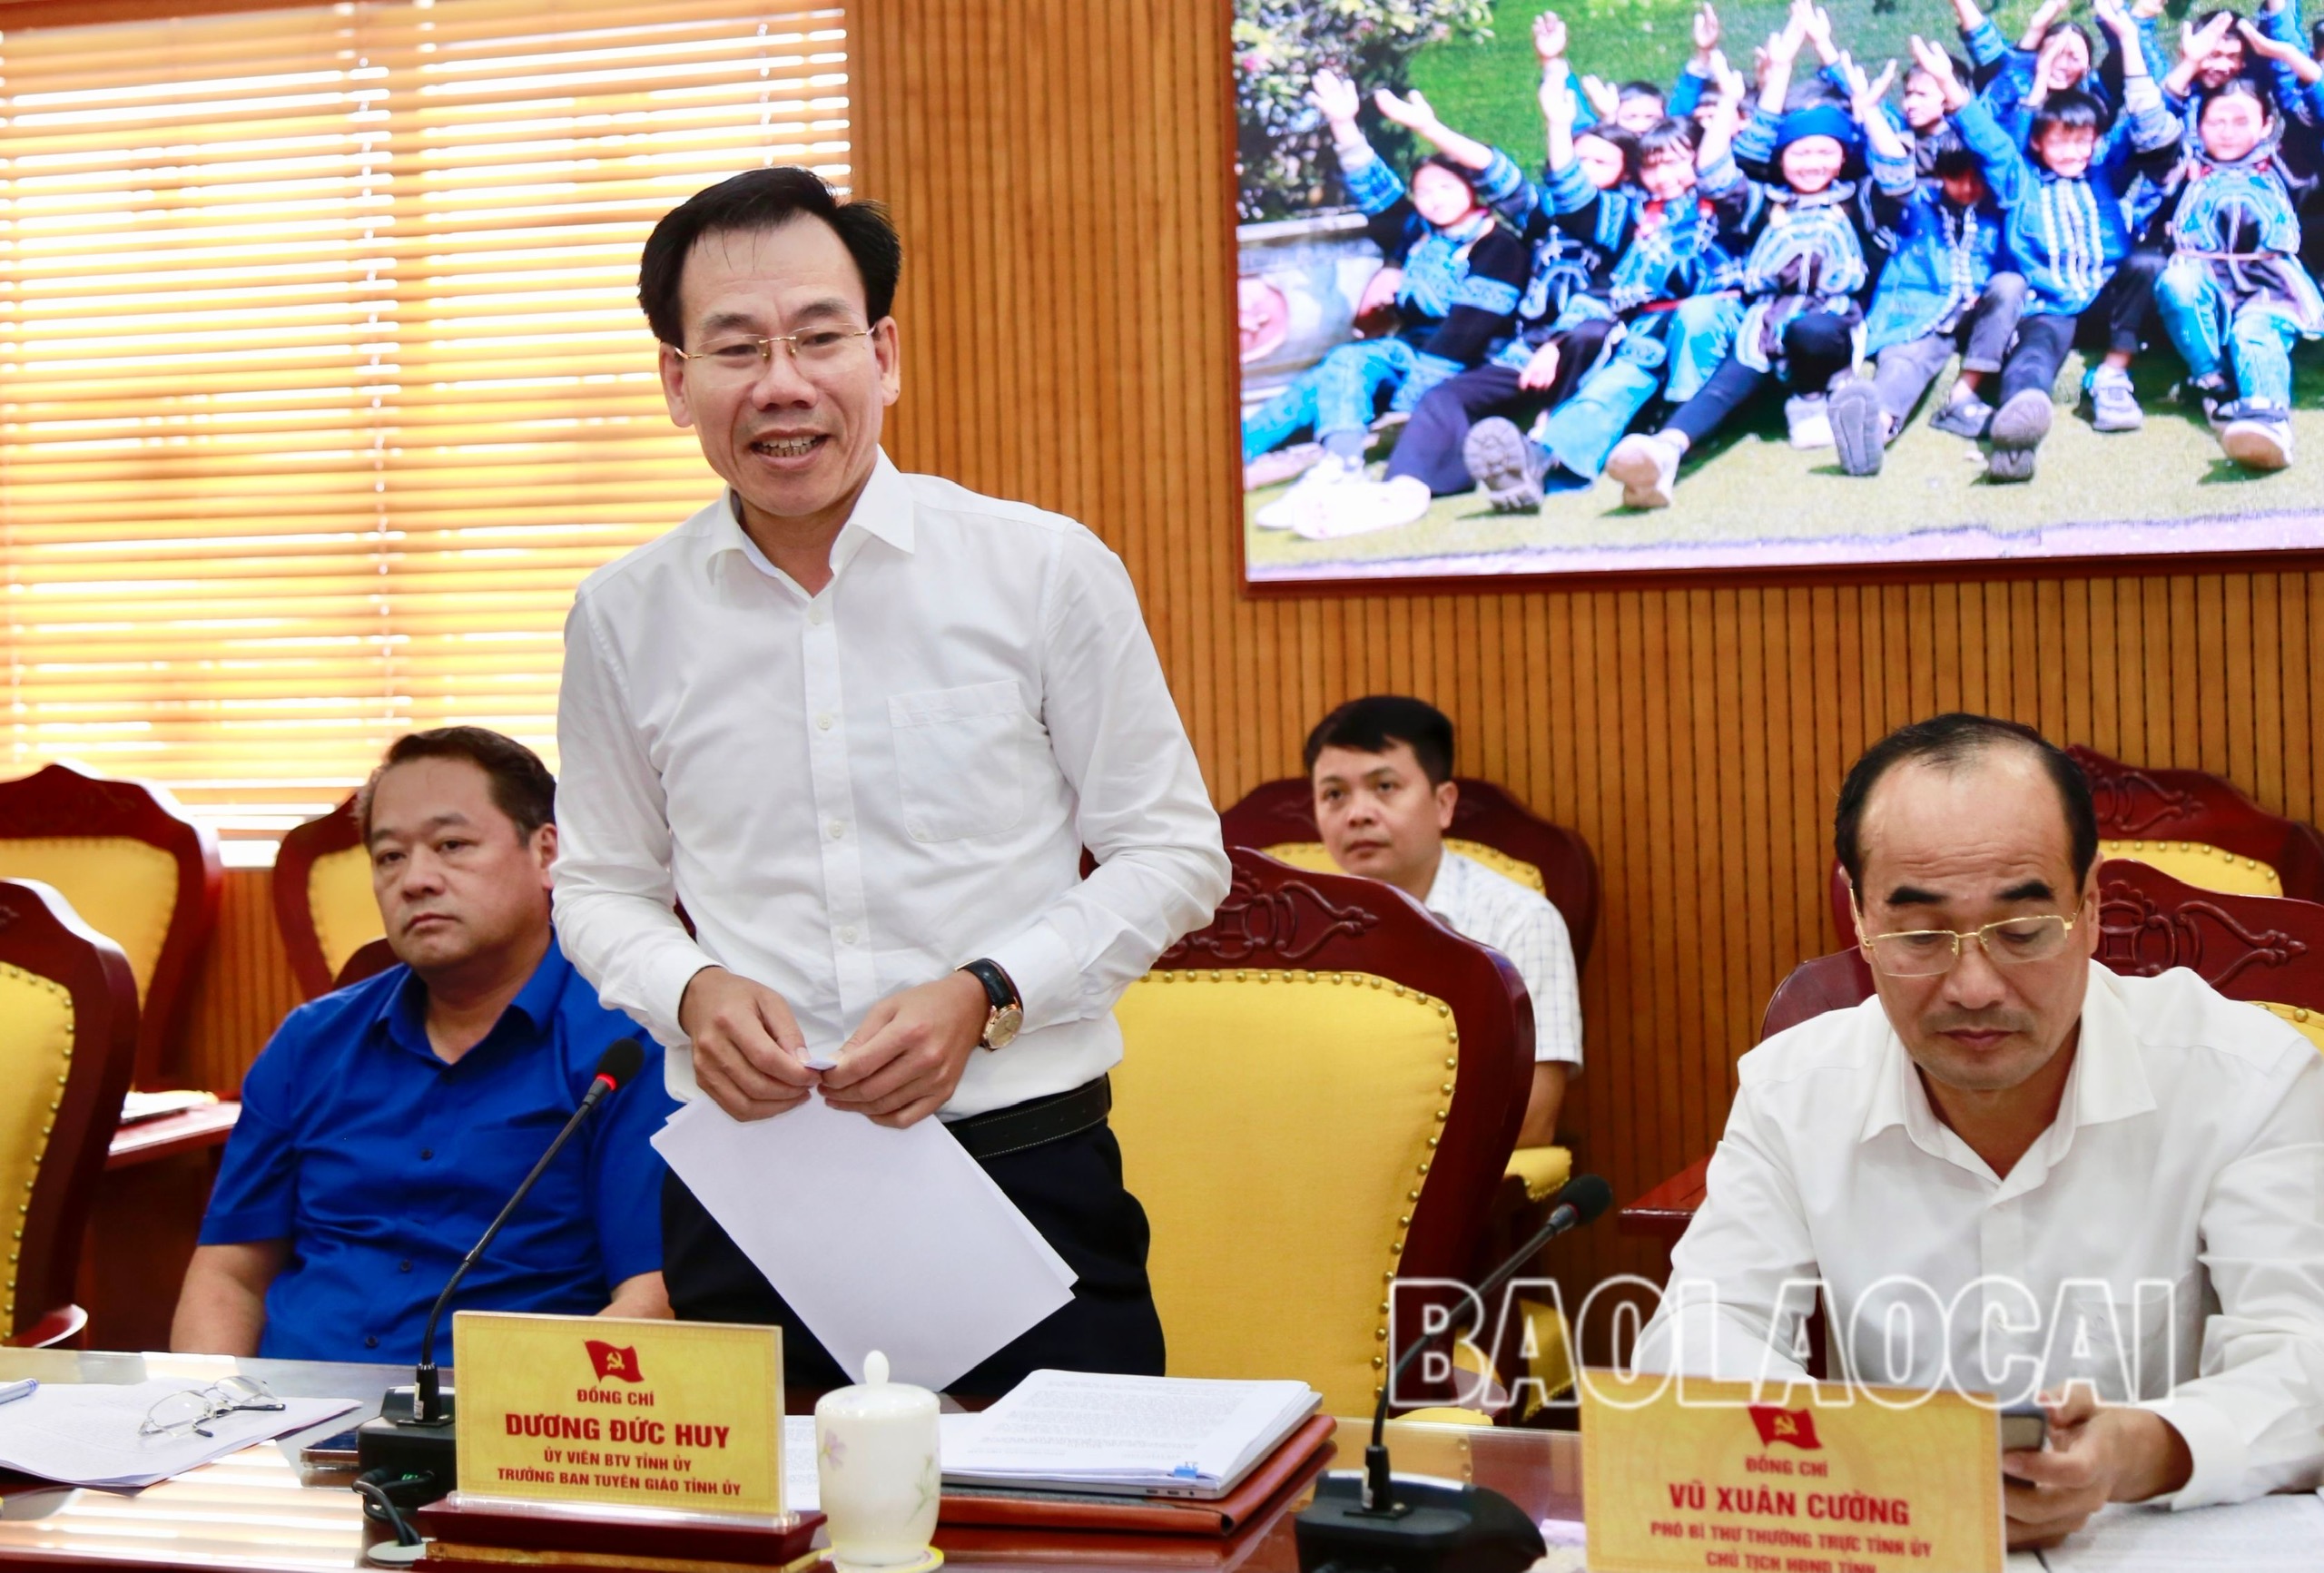 Đồng chí Dương Đức Huy, Ủy viên Ban Thường vụ, Trưởng Ban Tuyên giáo Tỉnh ủy phát biểu tại buổi làm việc. ảnh 4